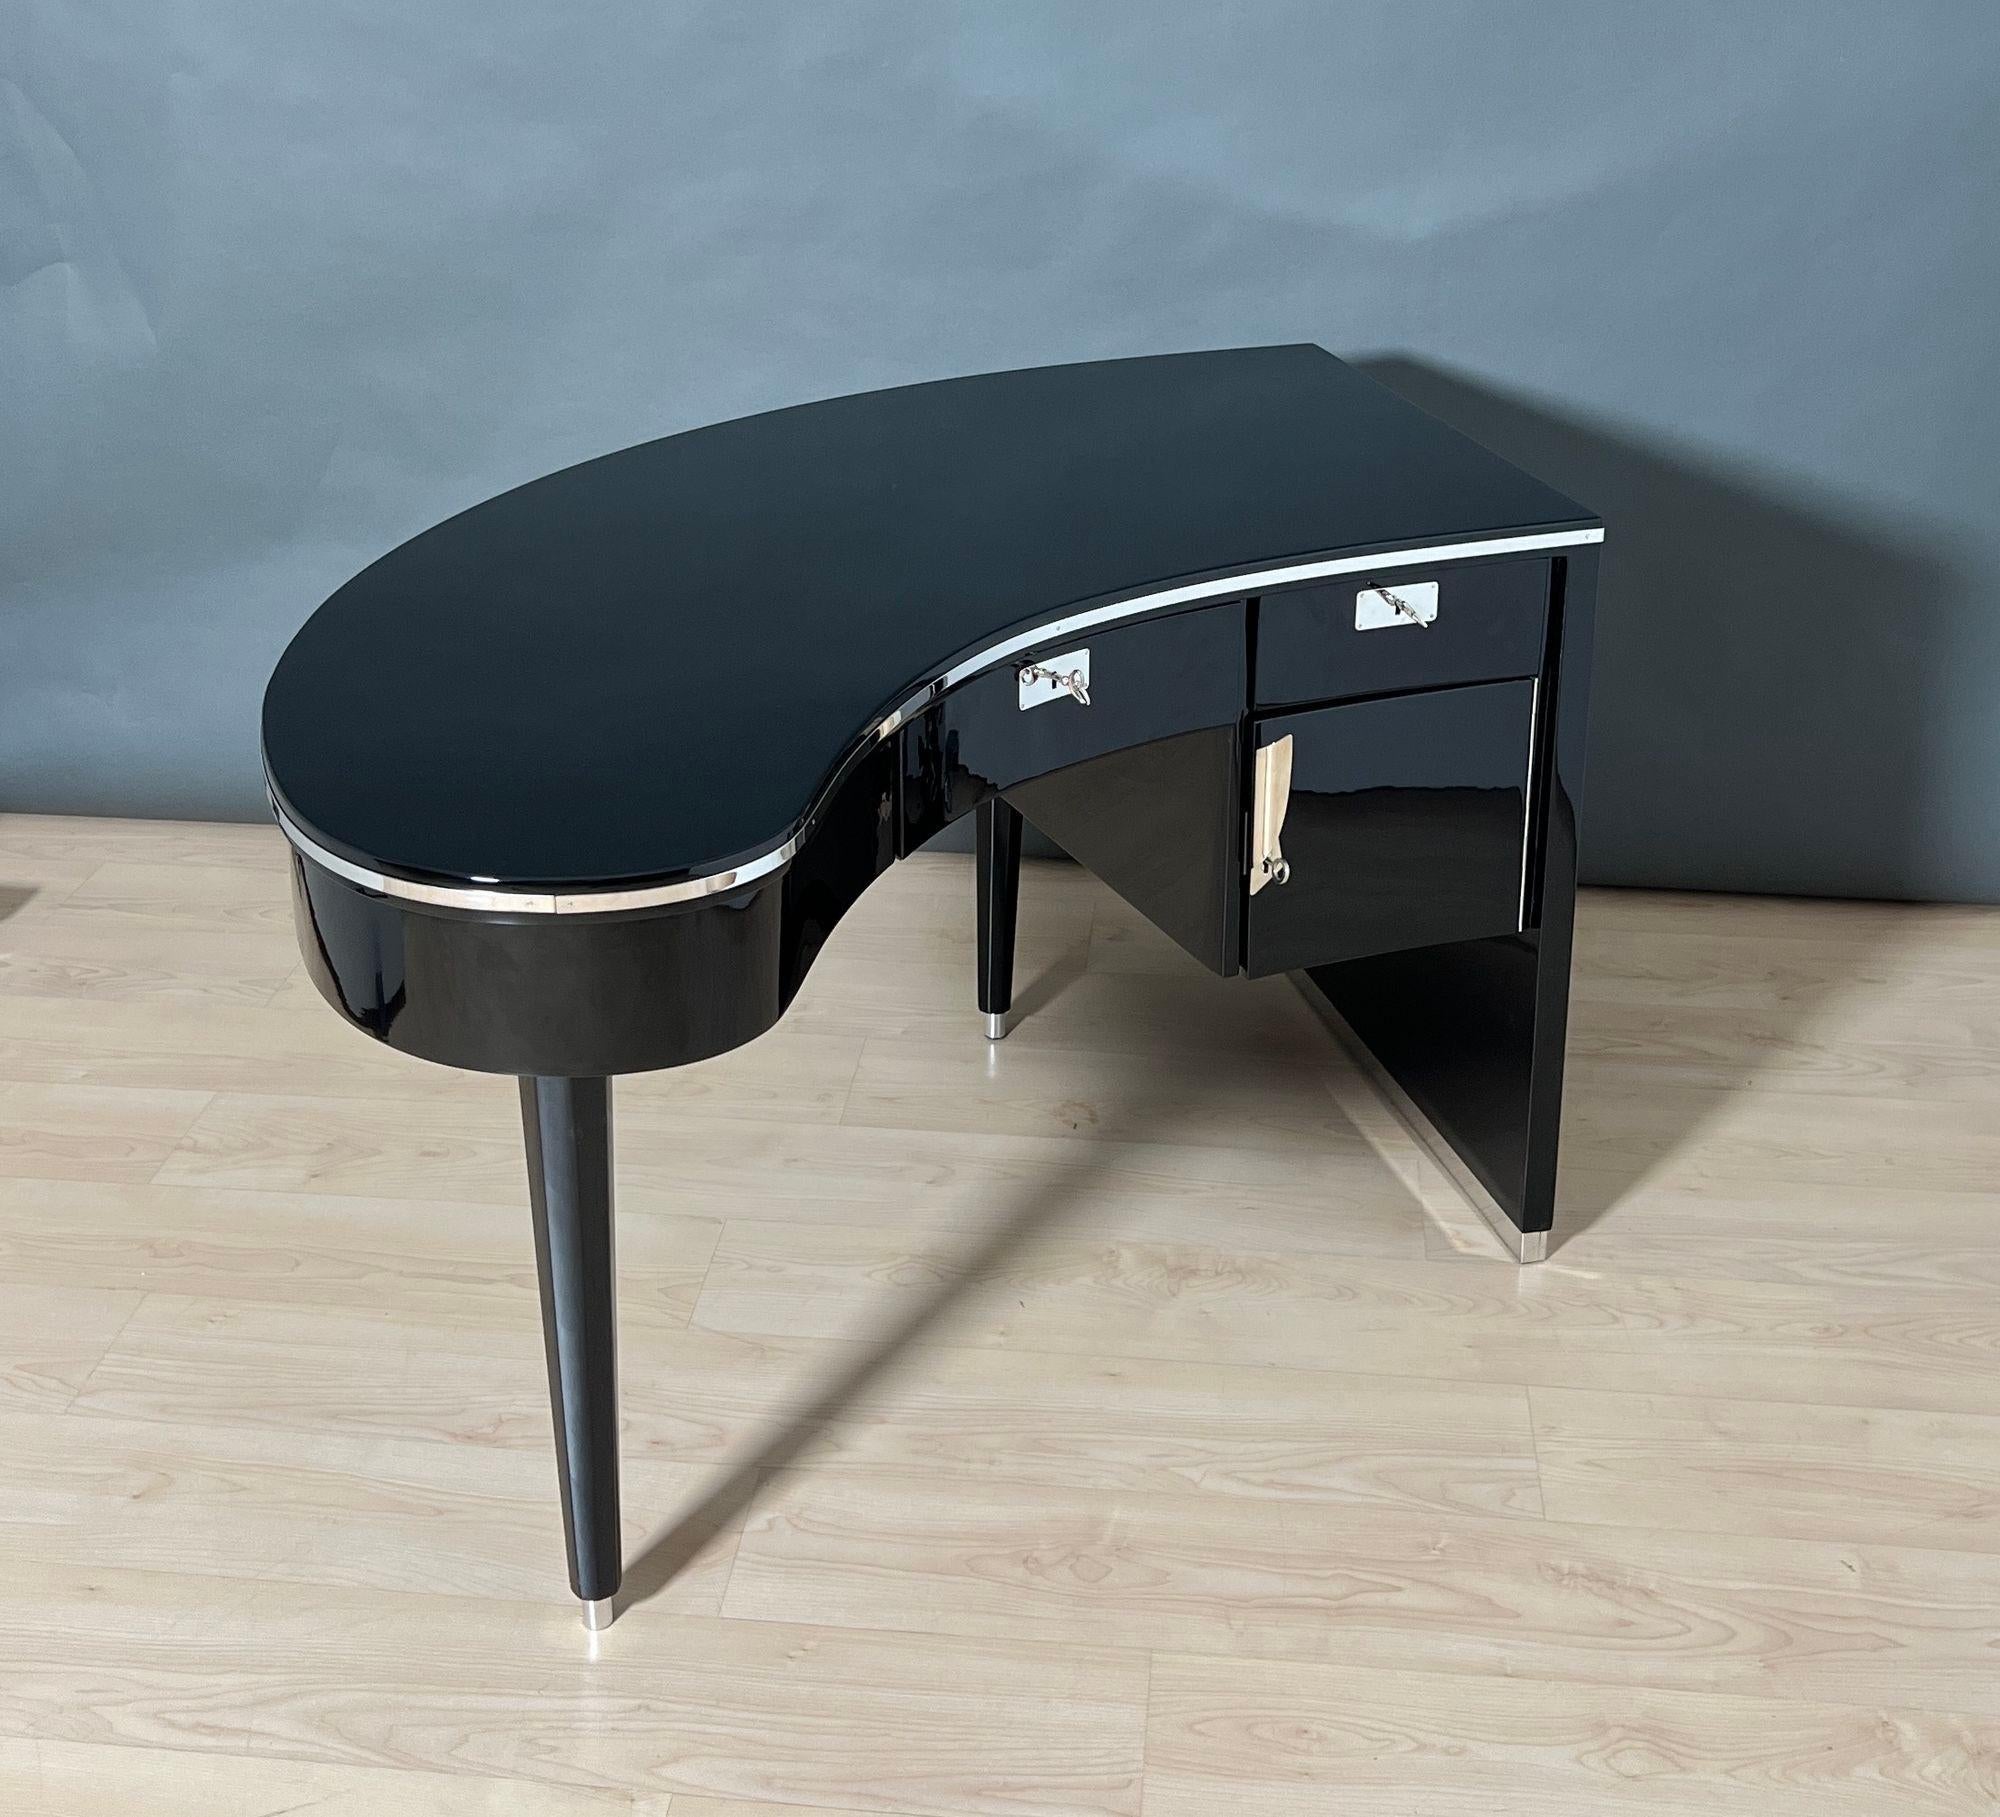 Außergewöhnlicher geschwungener (nierenförmiger) Designer-Schreibtisch aus den 1950/60er Jahren.
Asymmetrische Form, die der eines Flügels ähnelt. Nussbaum, hochglänzende schwarze Oberfläche mit Klavierlack. Achteckige, konische Füße mit